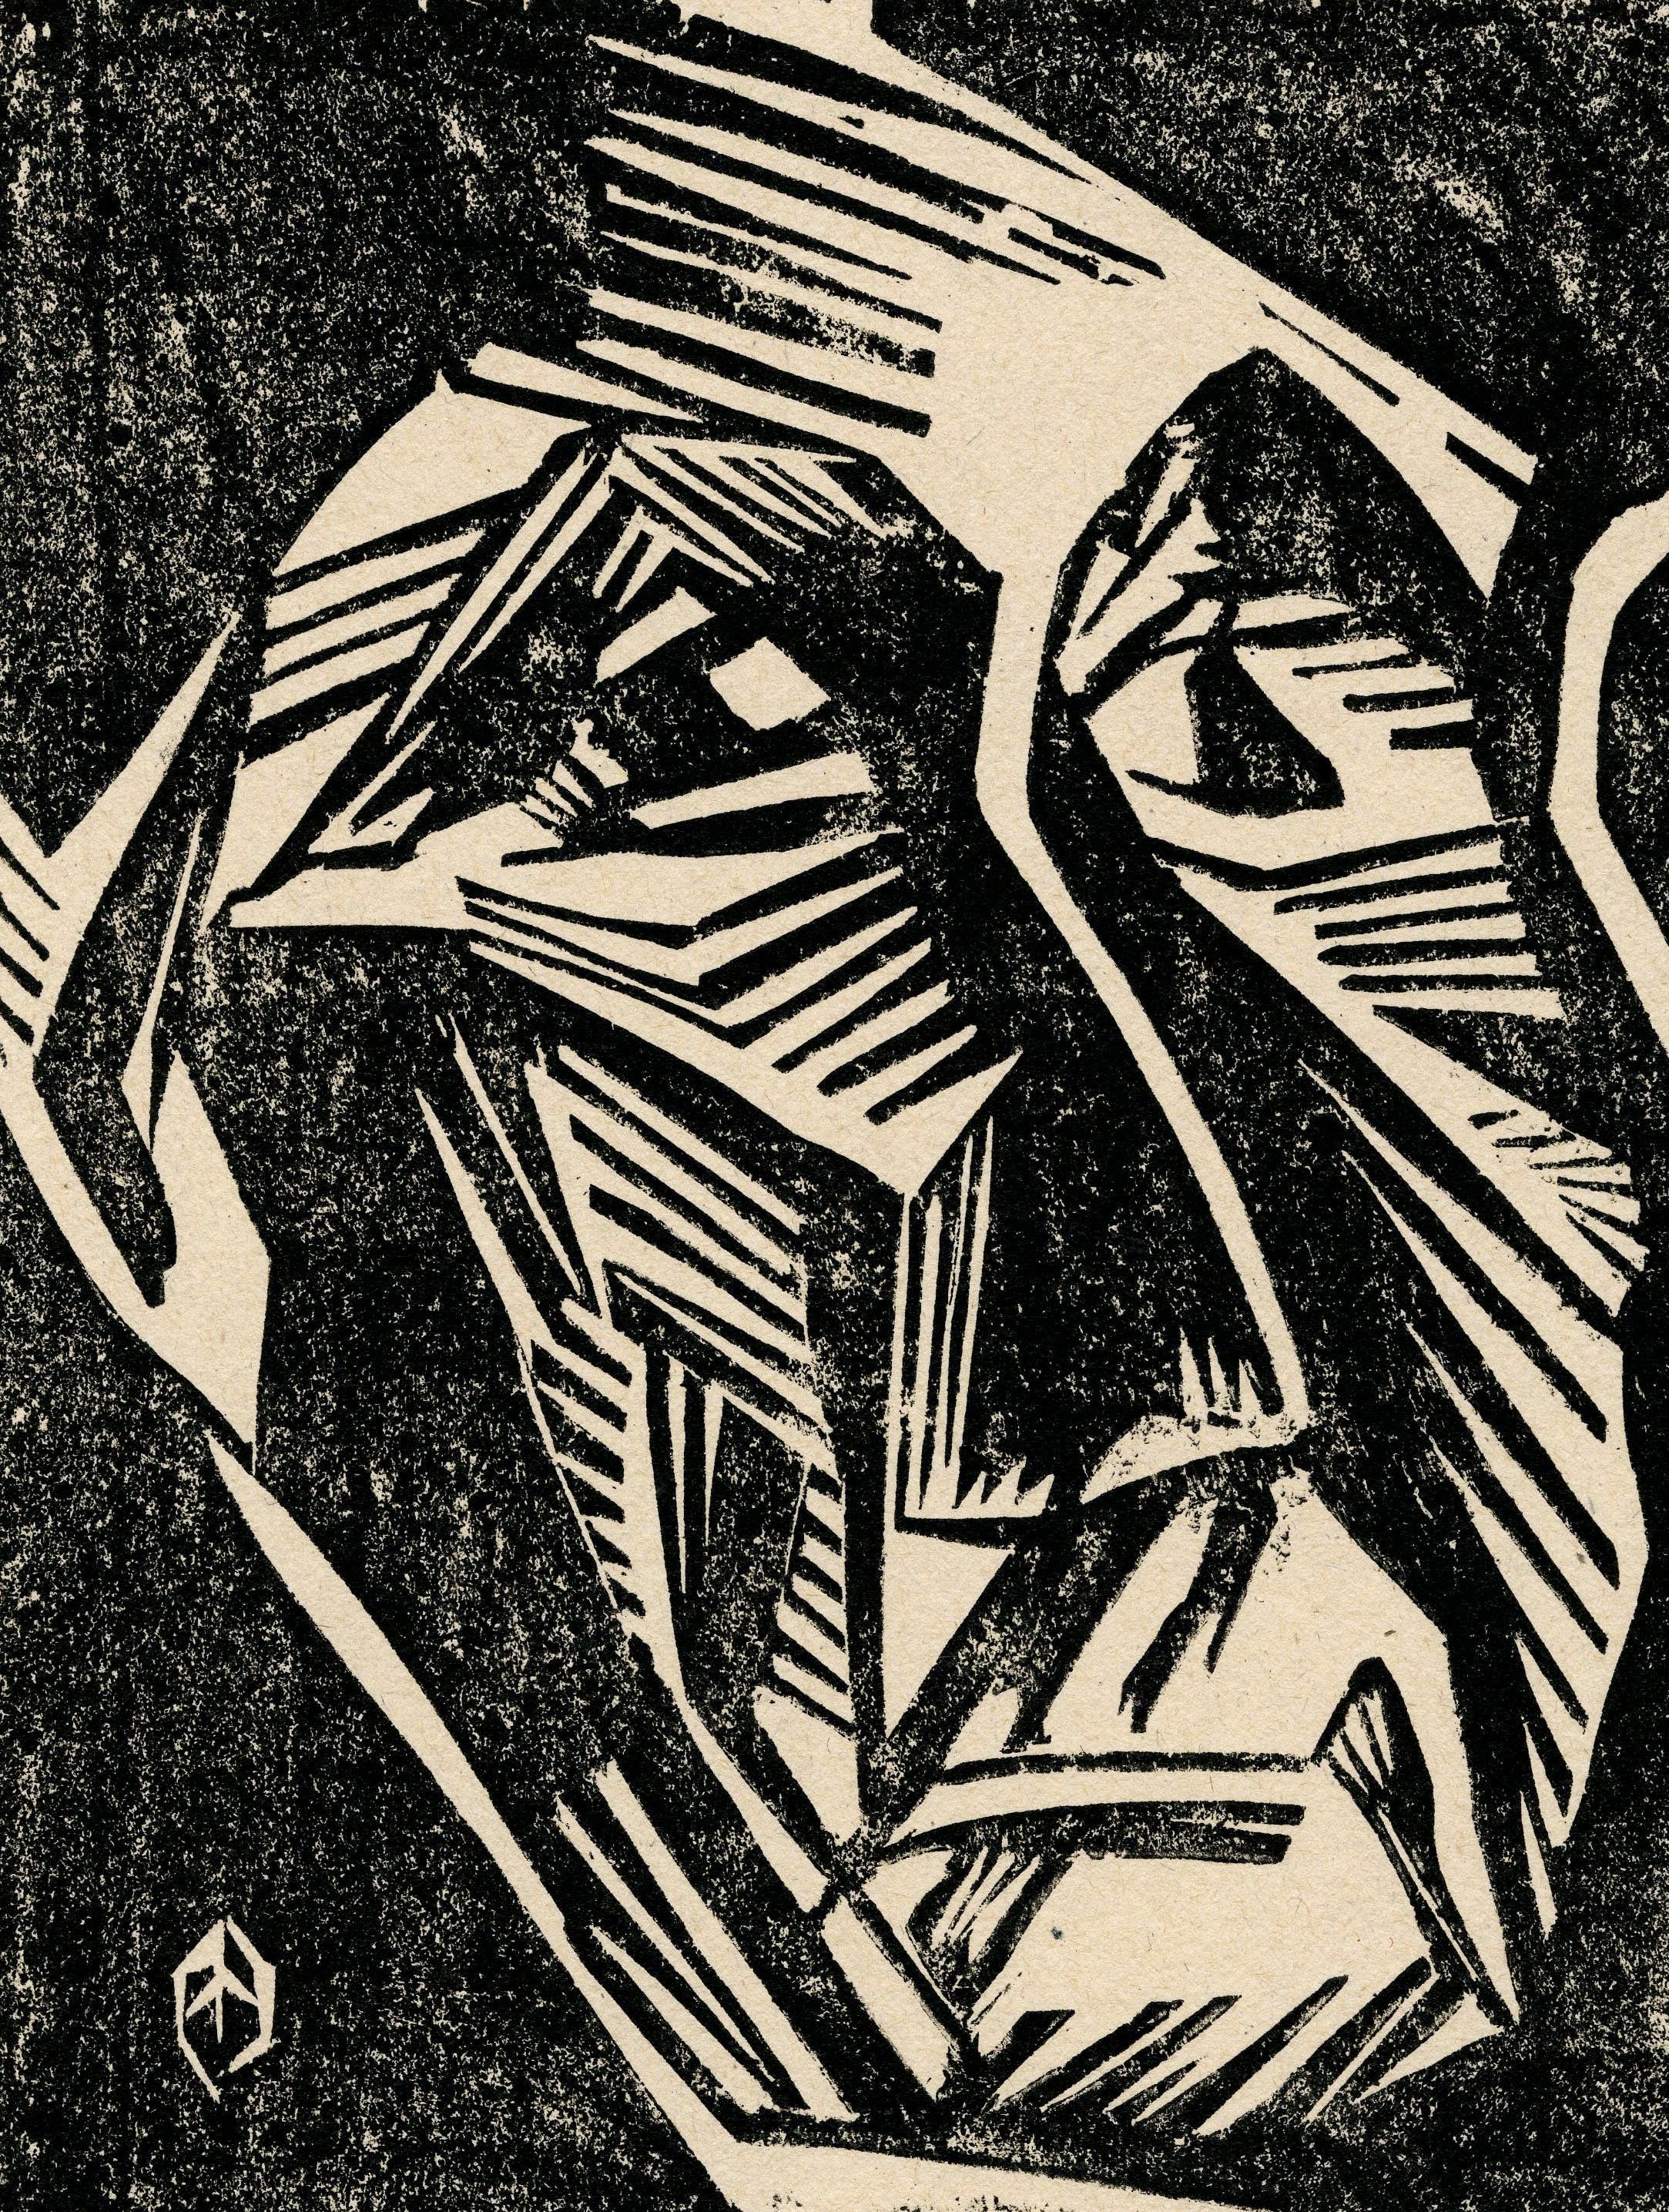 Ecce Homo VII
Gravure sur bois, 1921
Signé, titré et daté au crayon par l'artiste
L'une des trois seules impressions connues
Créée pendant que l'artiste étudiait au Bauhaus à Weimar, en Allemagne.
Extrêmement rare - Une des trois impressions